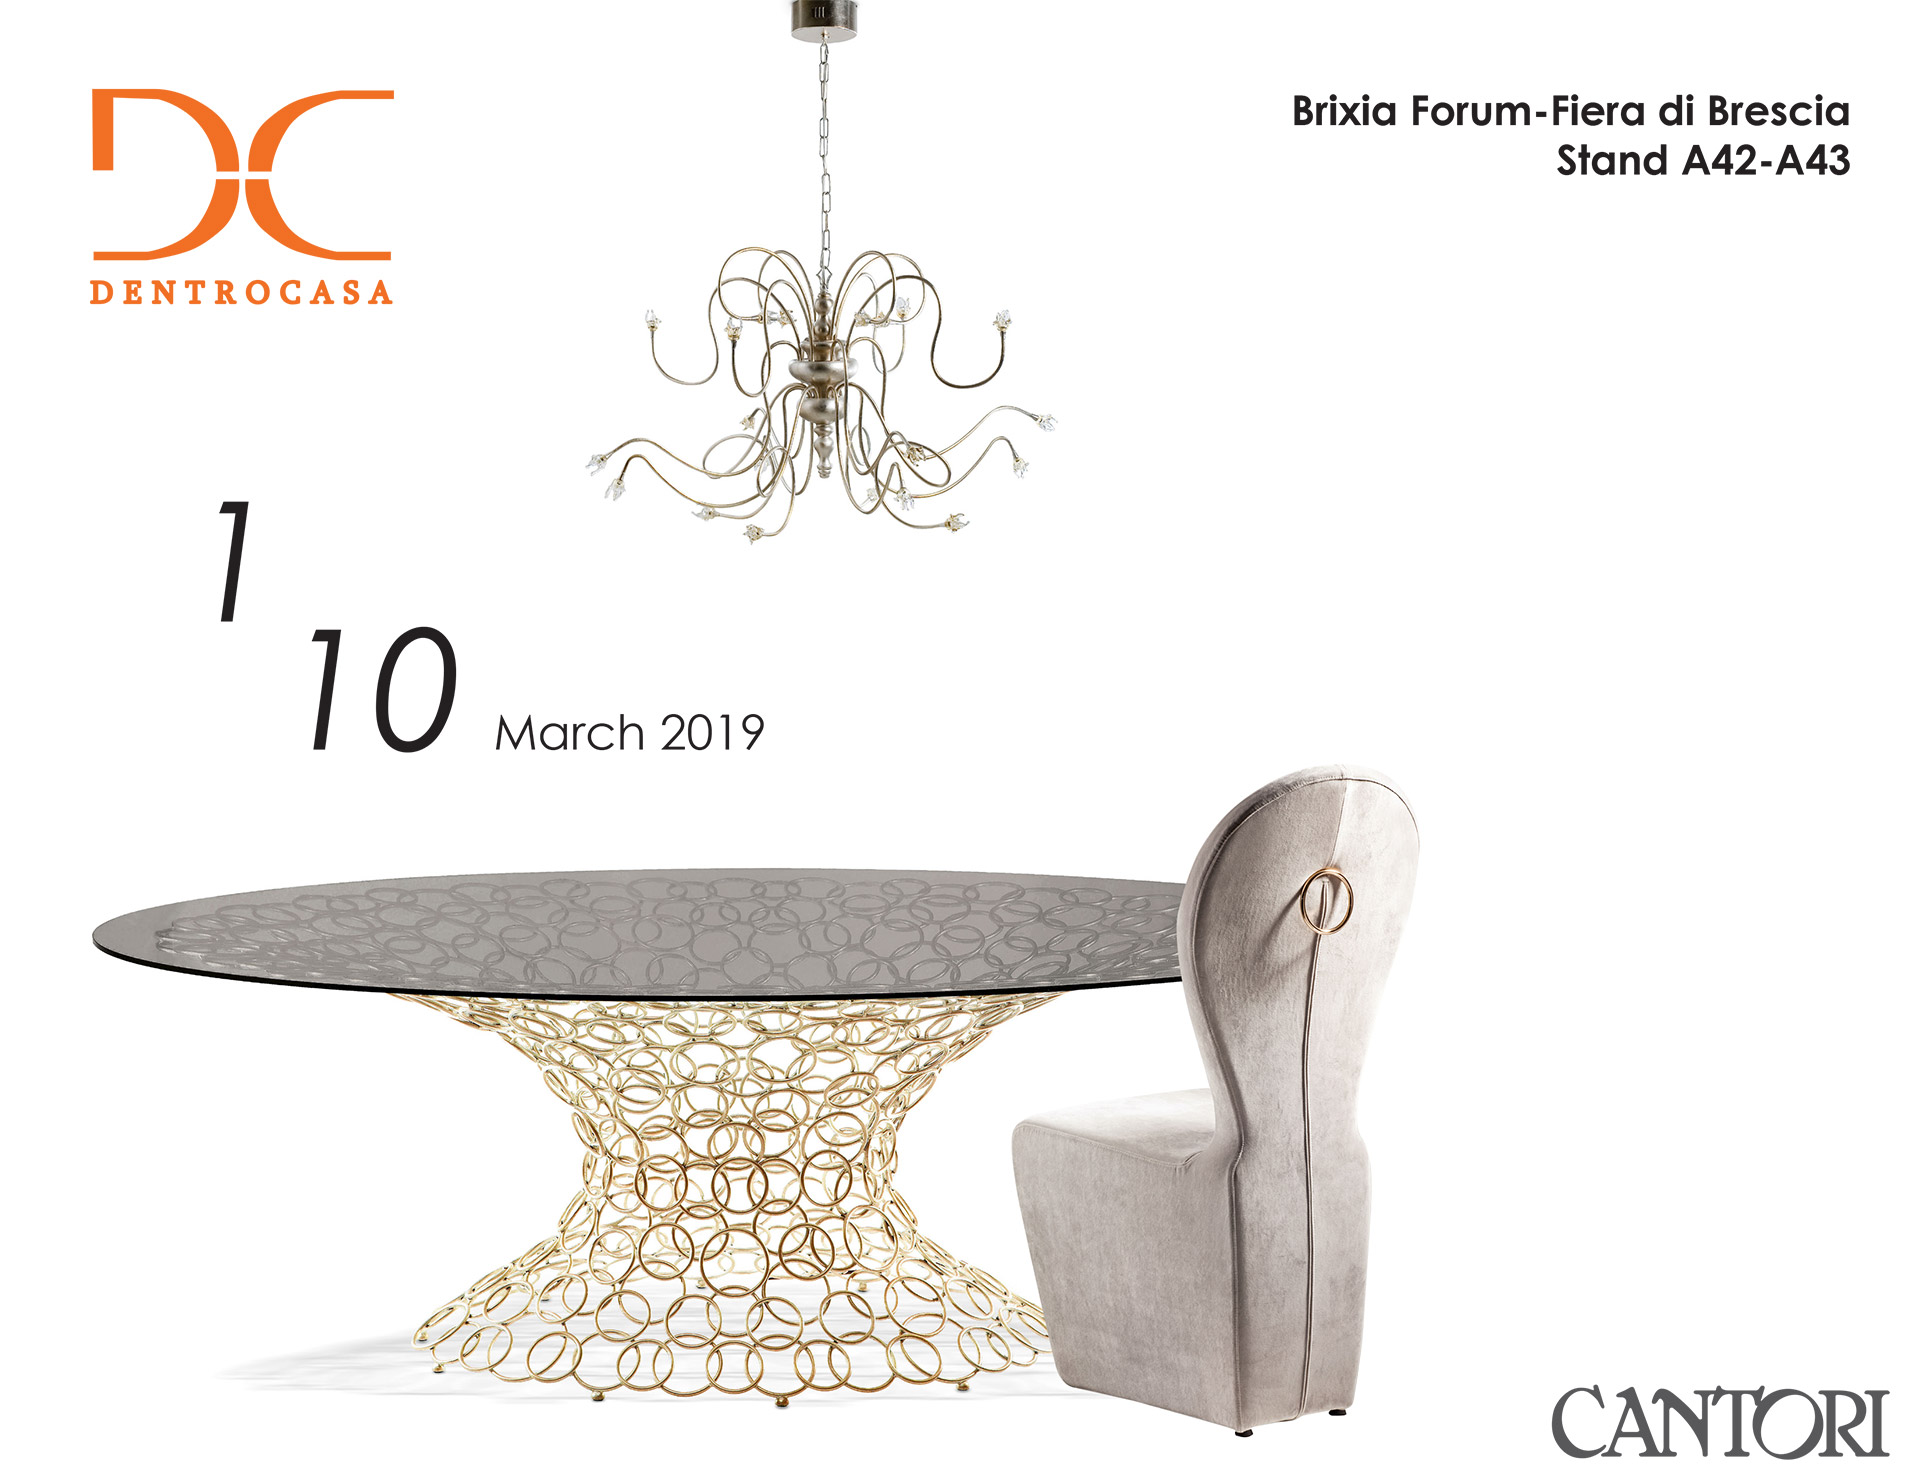 11/02/2019 Cantori at Dentro Casa in Brescia 2019 - Cantori